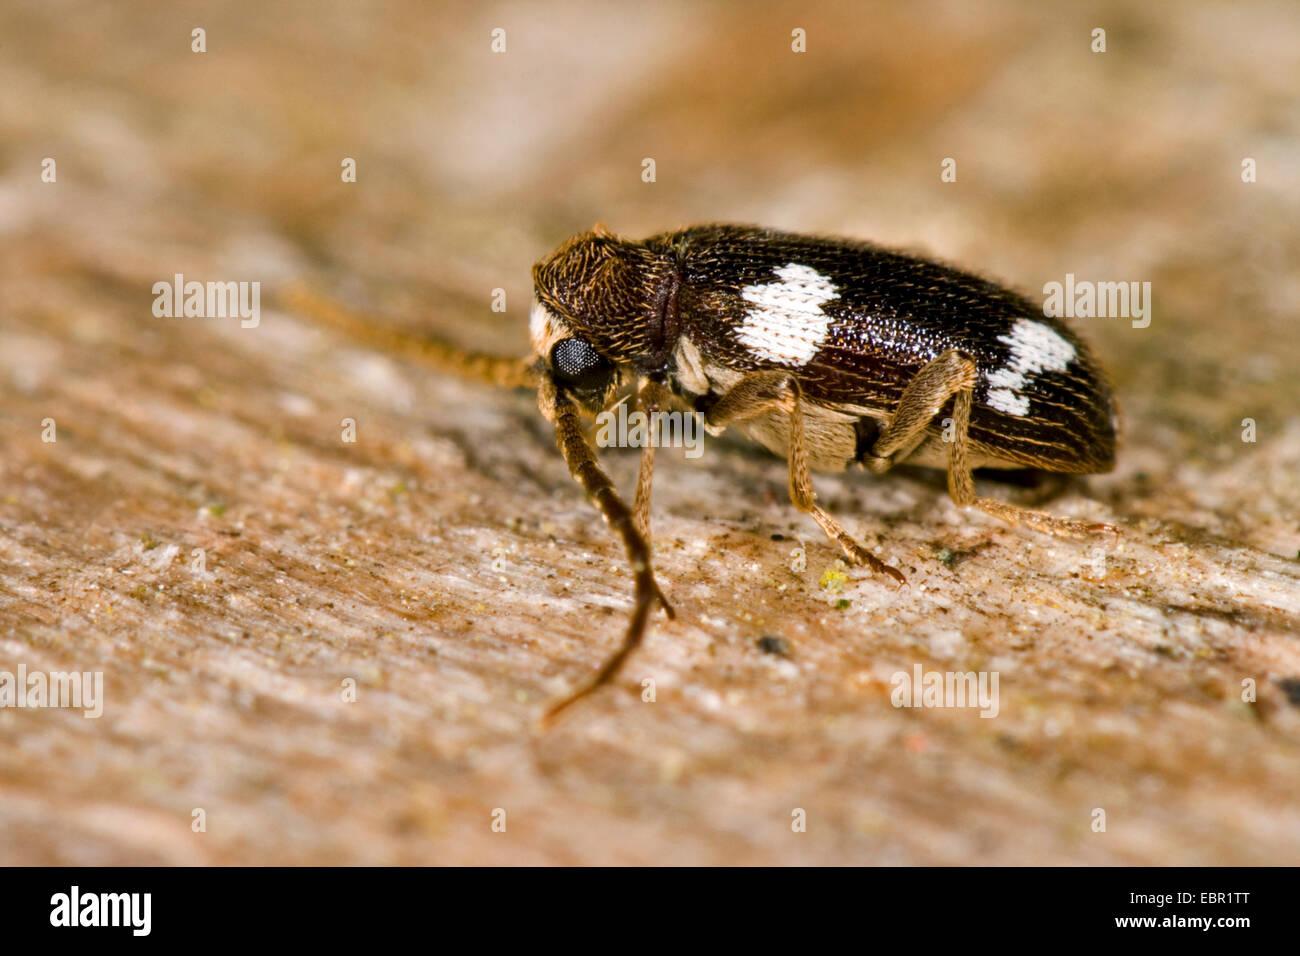 Spider beetle (Ptinus sexpunctatus), on deadwood, Germany Stock Photo